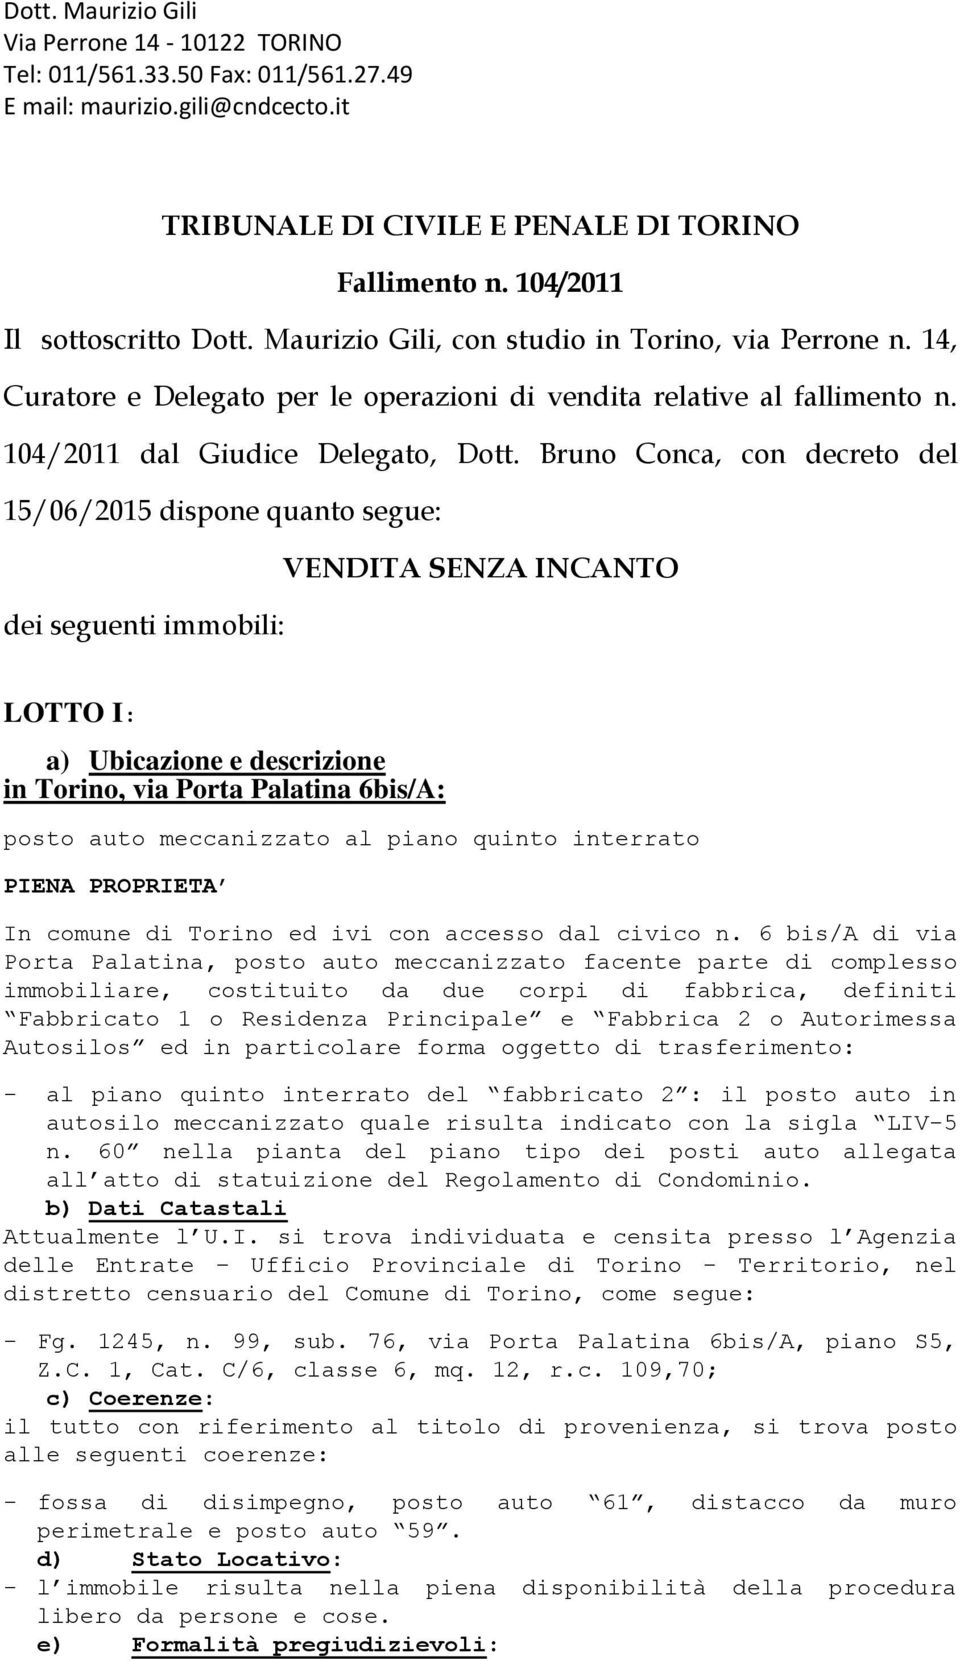 Bruno Conca, con decreto del 15/06/2015 dispone quanto segue: VENDITA SENZA INCANTO dei seguenti immobili: LOTTO I: a) Ubicazione e descrizione in Torino, via Porta Palatina 6bis/A: posto auto